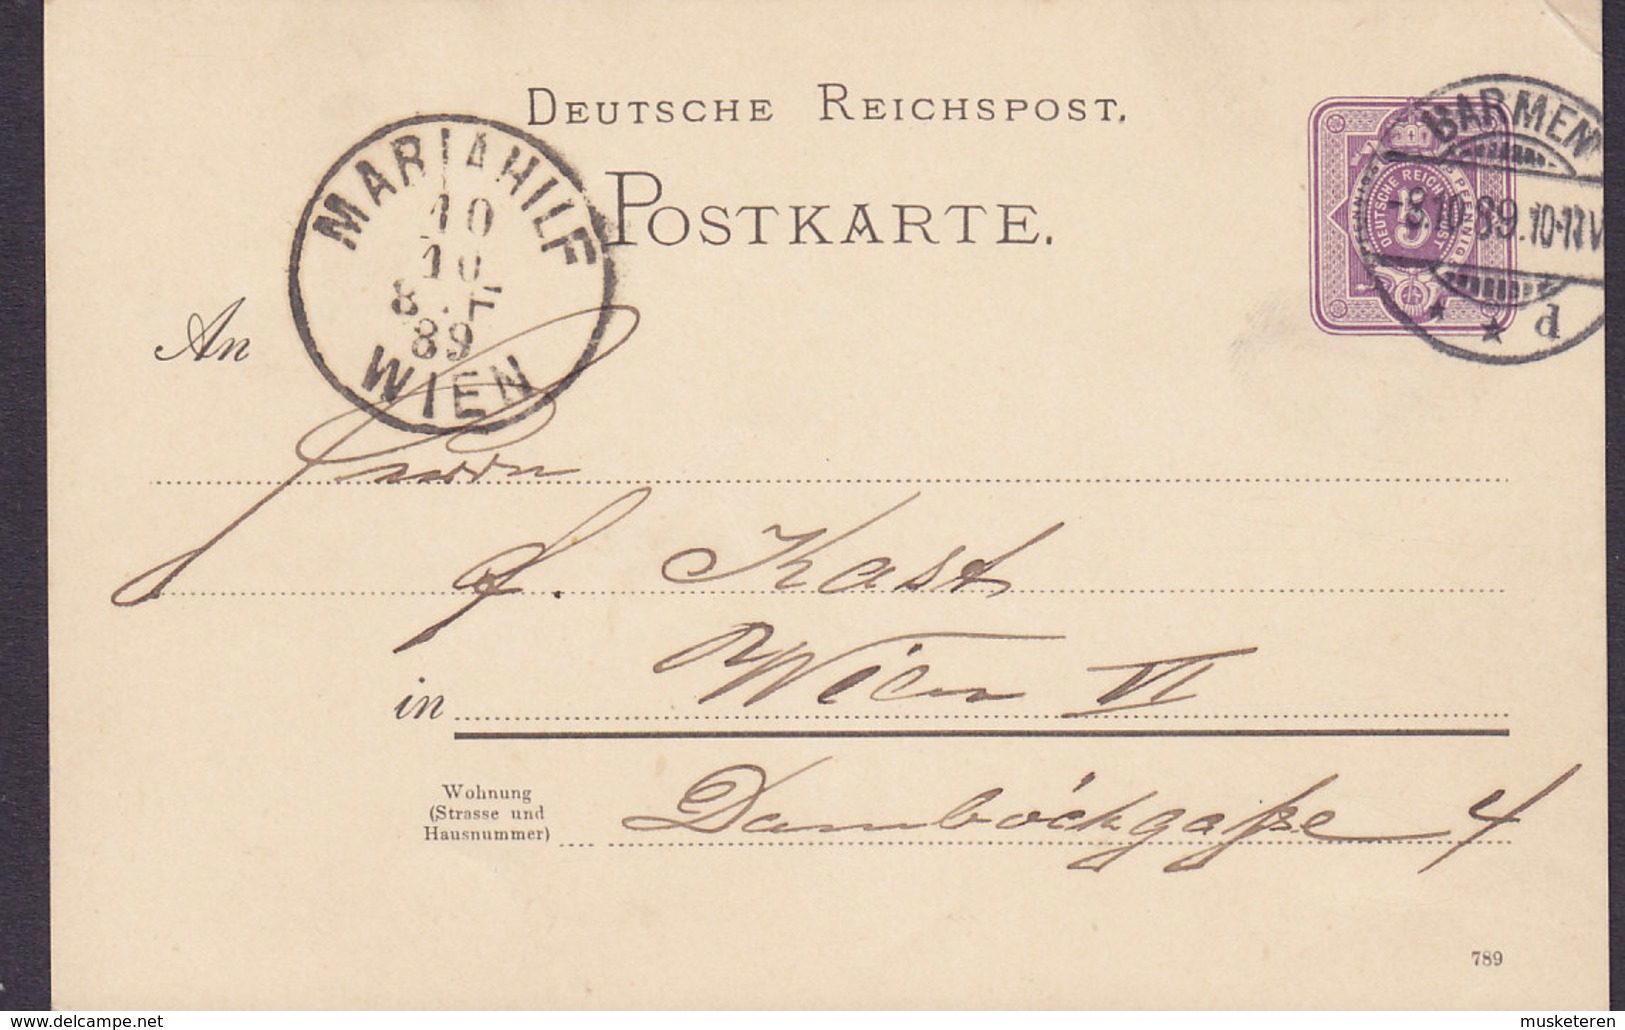 Germany Deutsche Reichspost Postal Stationery Ganzsache 5 Pf. (789) BARMEN 1889 MARIAHILF Wien Austria (Arr.)(2 Scans) - Postcards